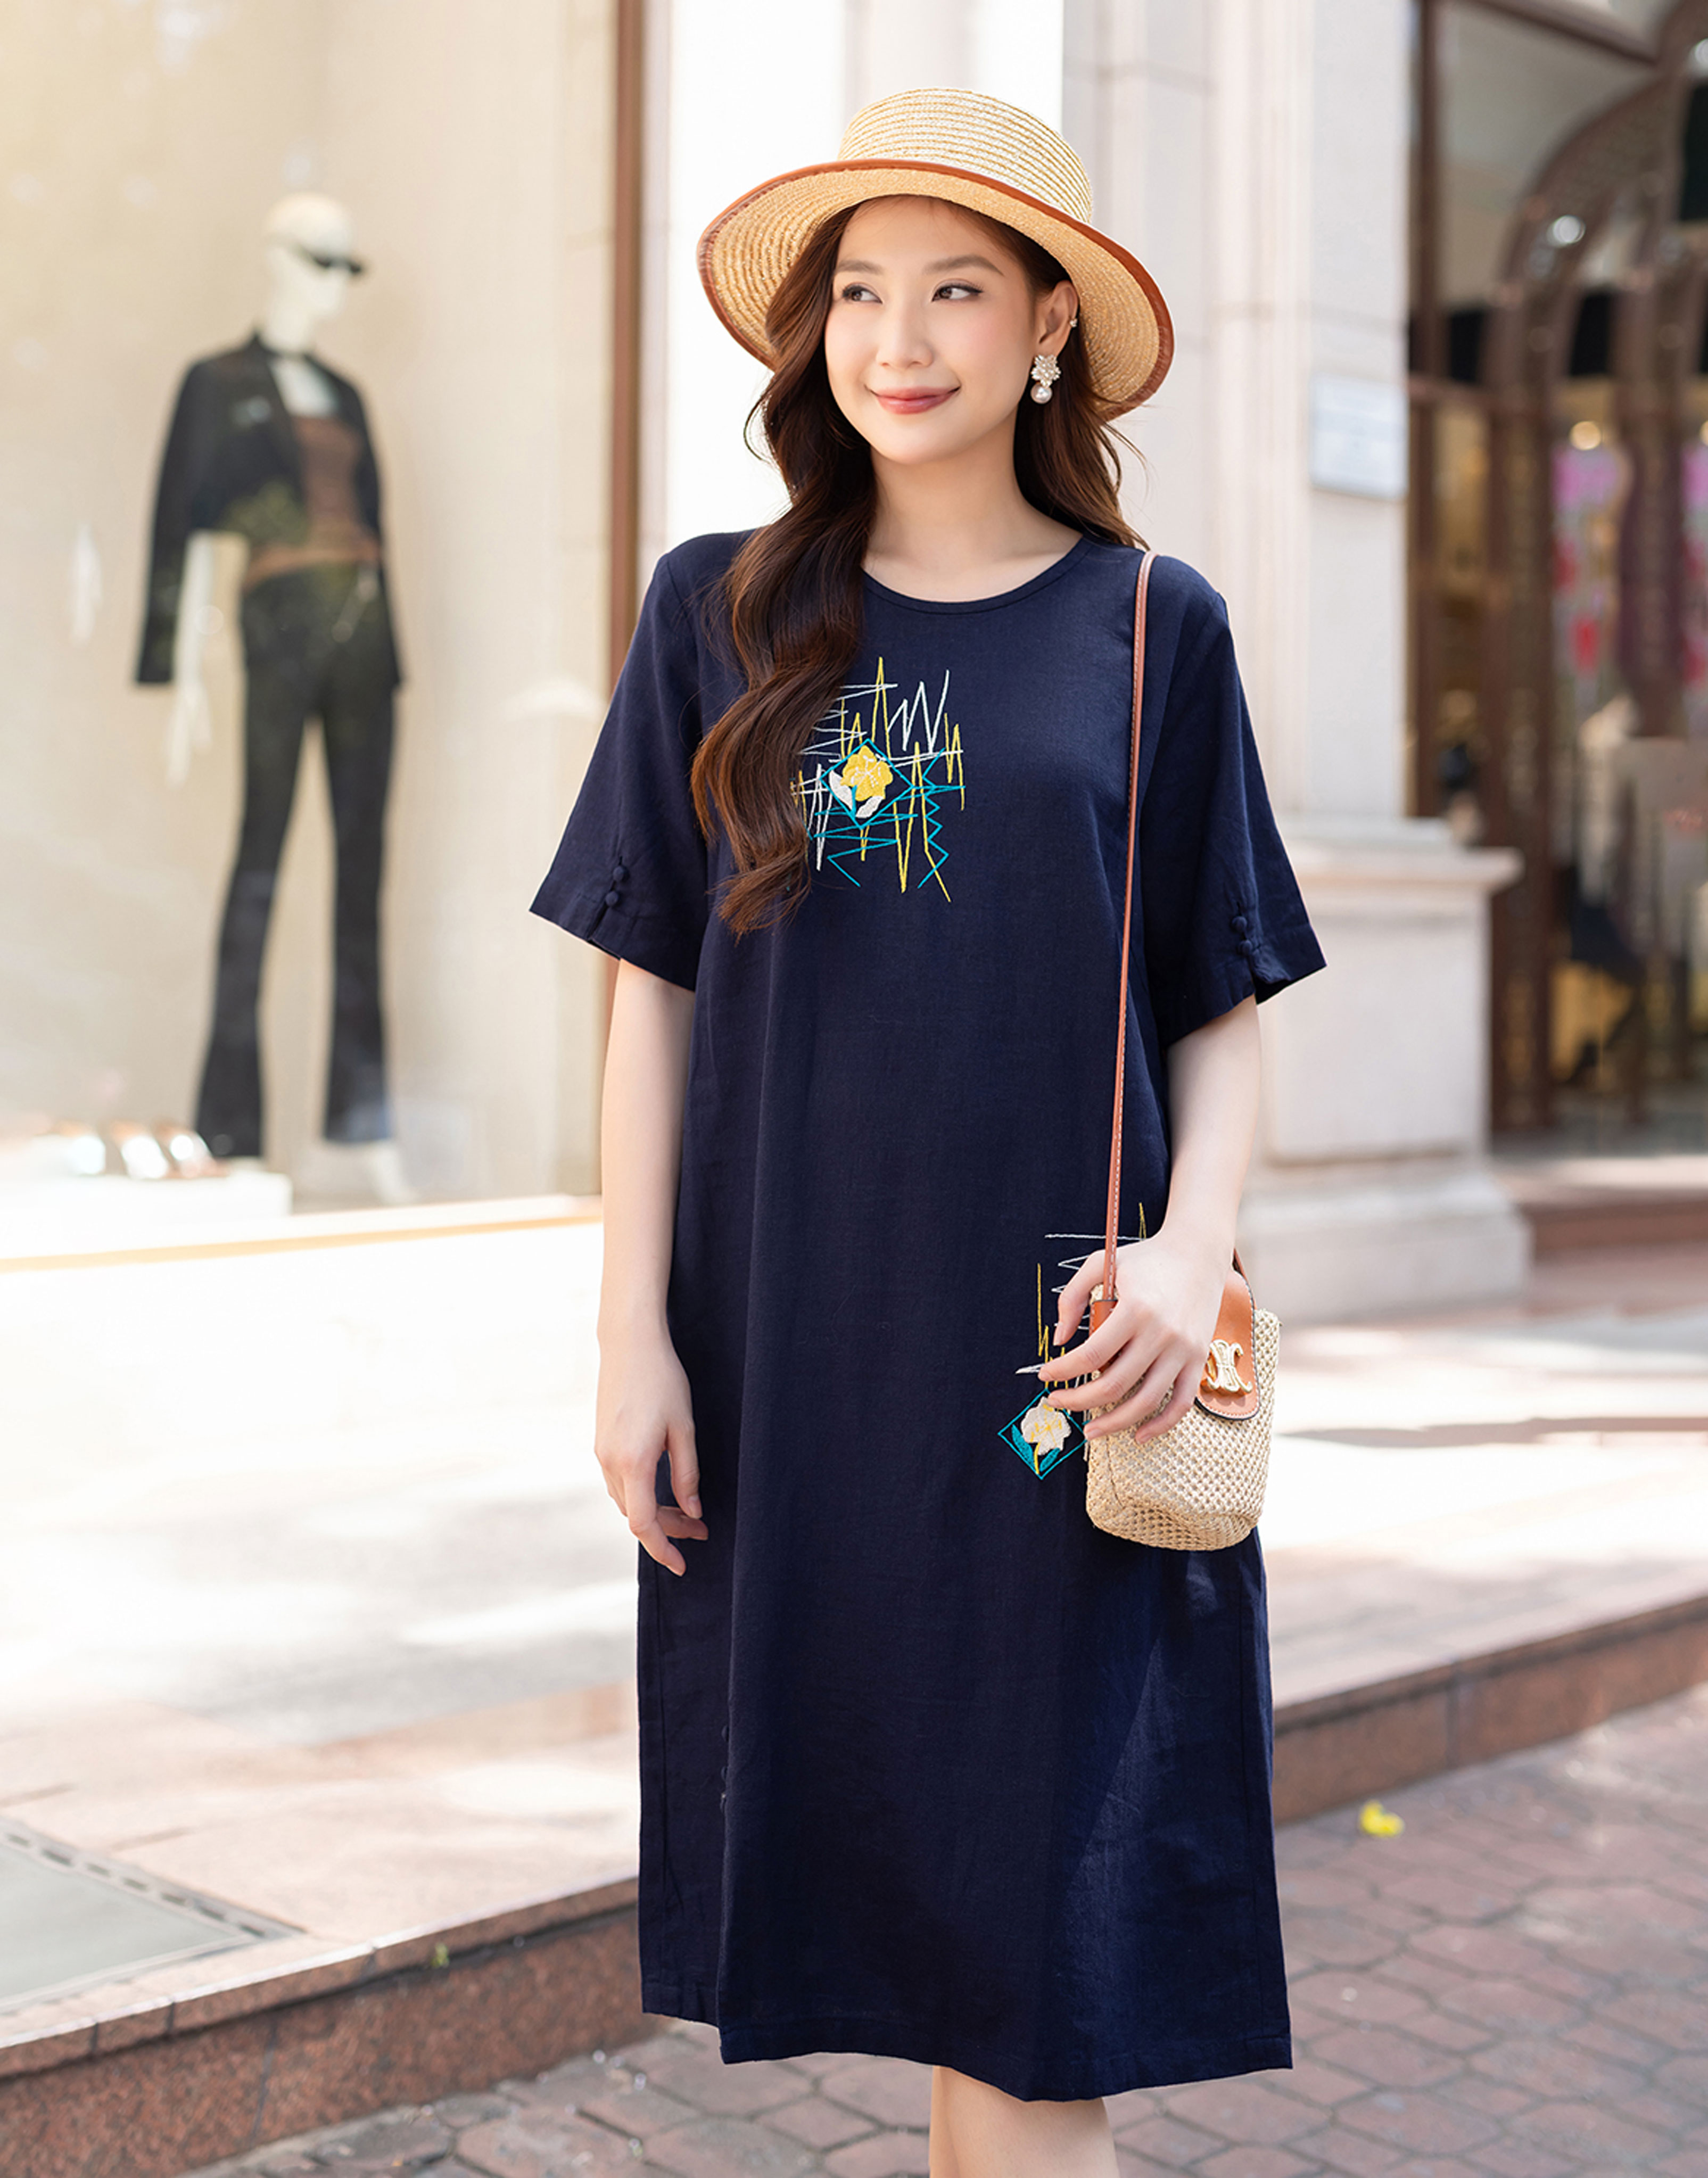 Đầm suông công sở linen cổ sơ mi 2 túi sườn trẻ trung, thời trang hè thu  2021 | Shopee Việt Nam